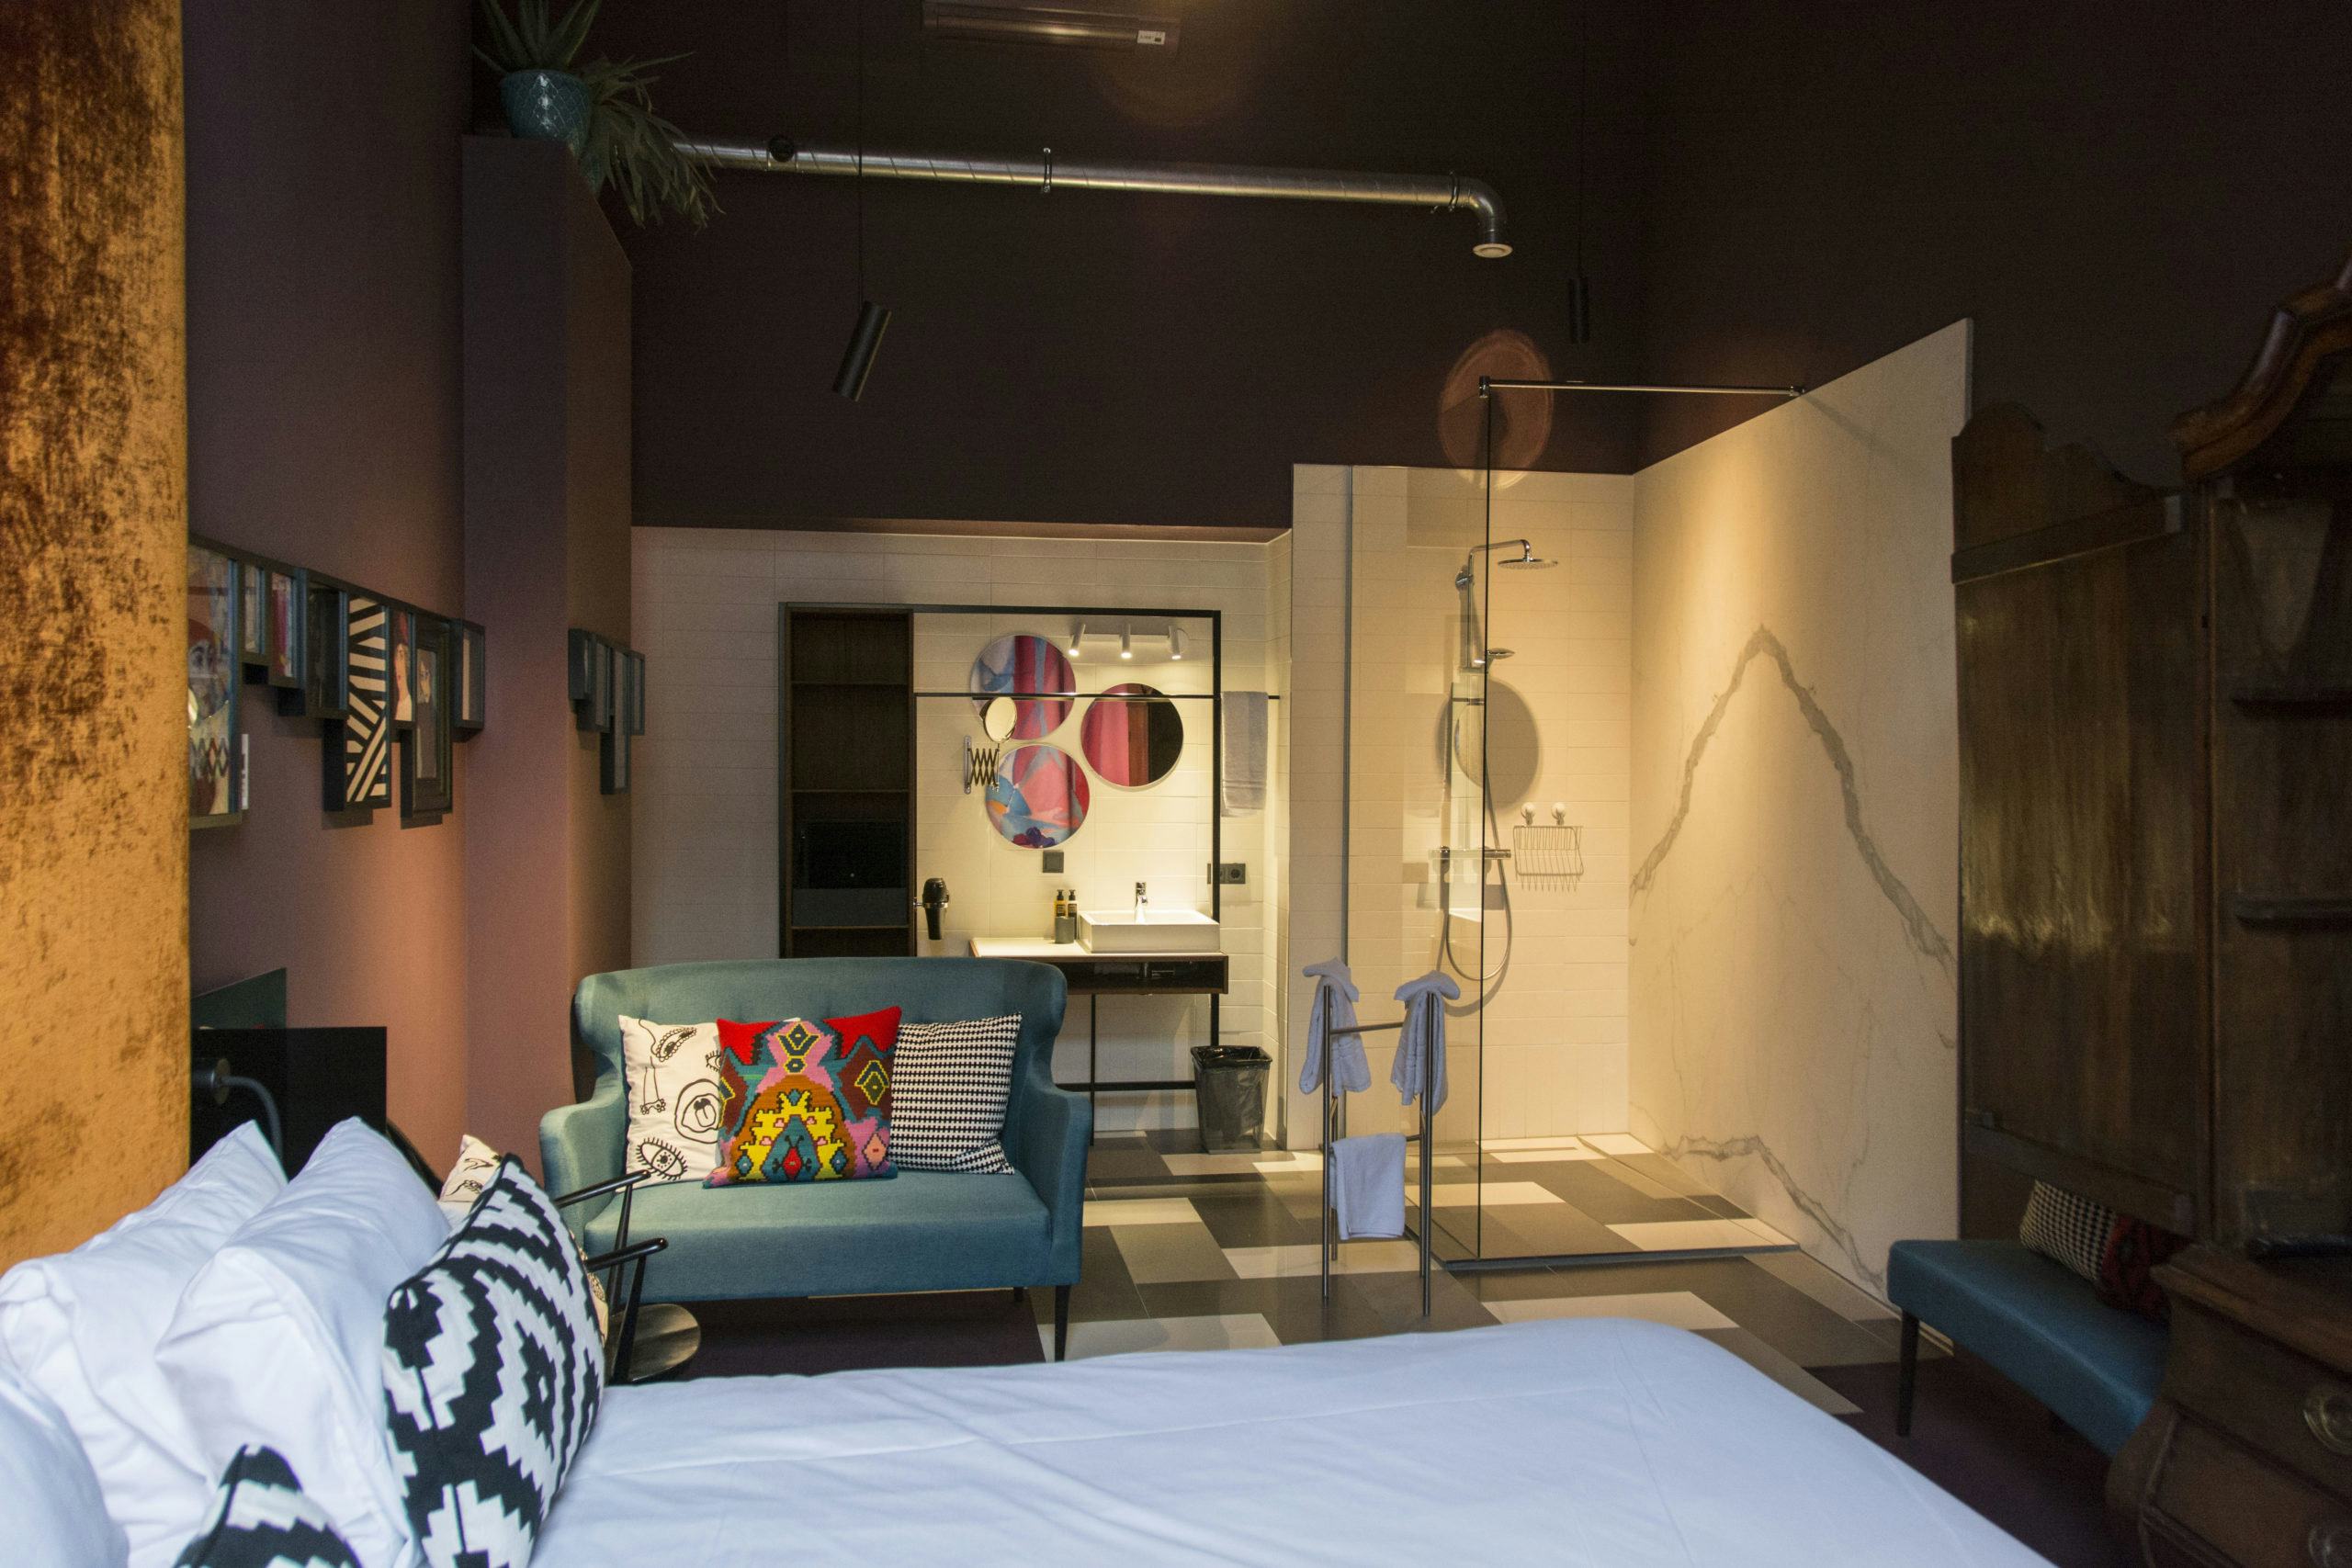 Hotelkamer met inloopdouche bij boutiquehotel Staats in Haarlem. Foto: Estida